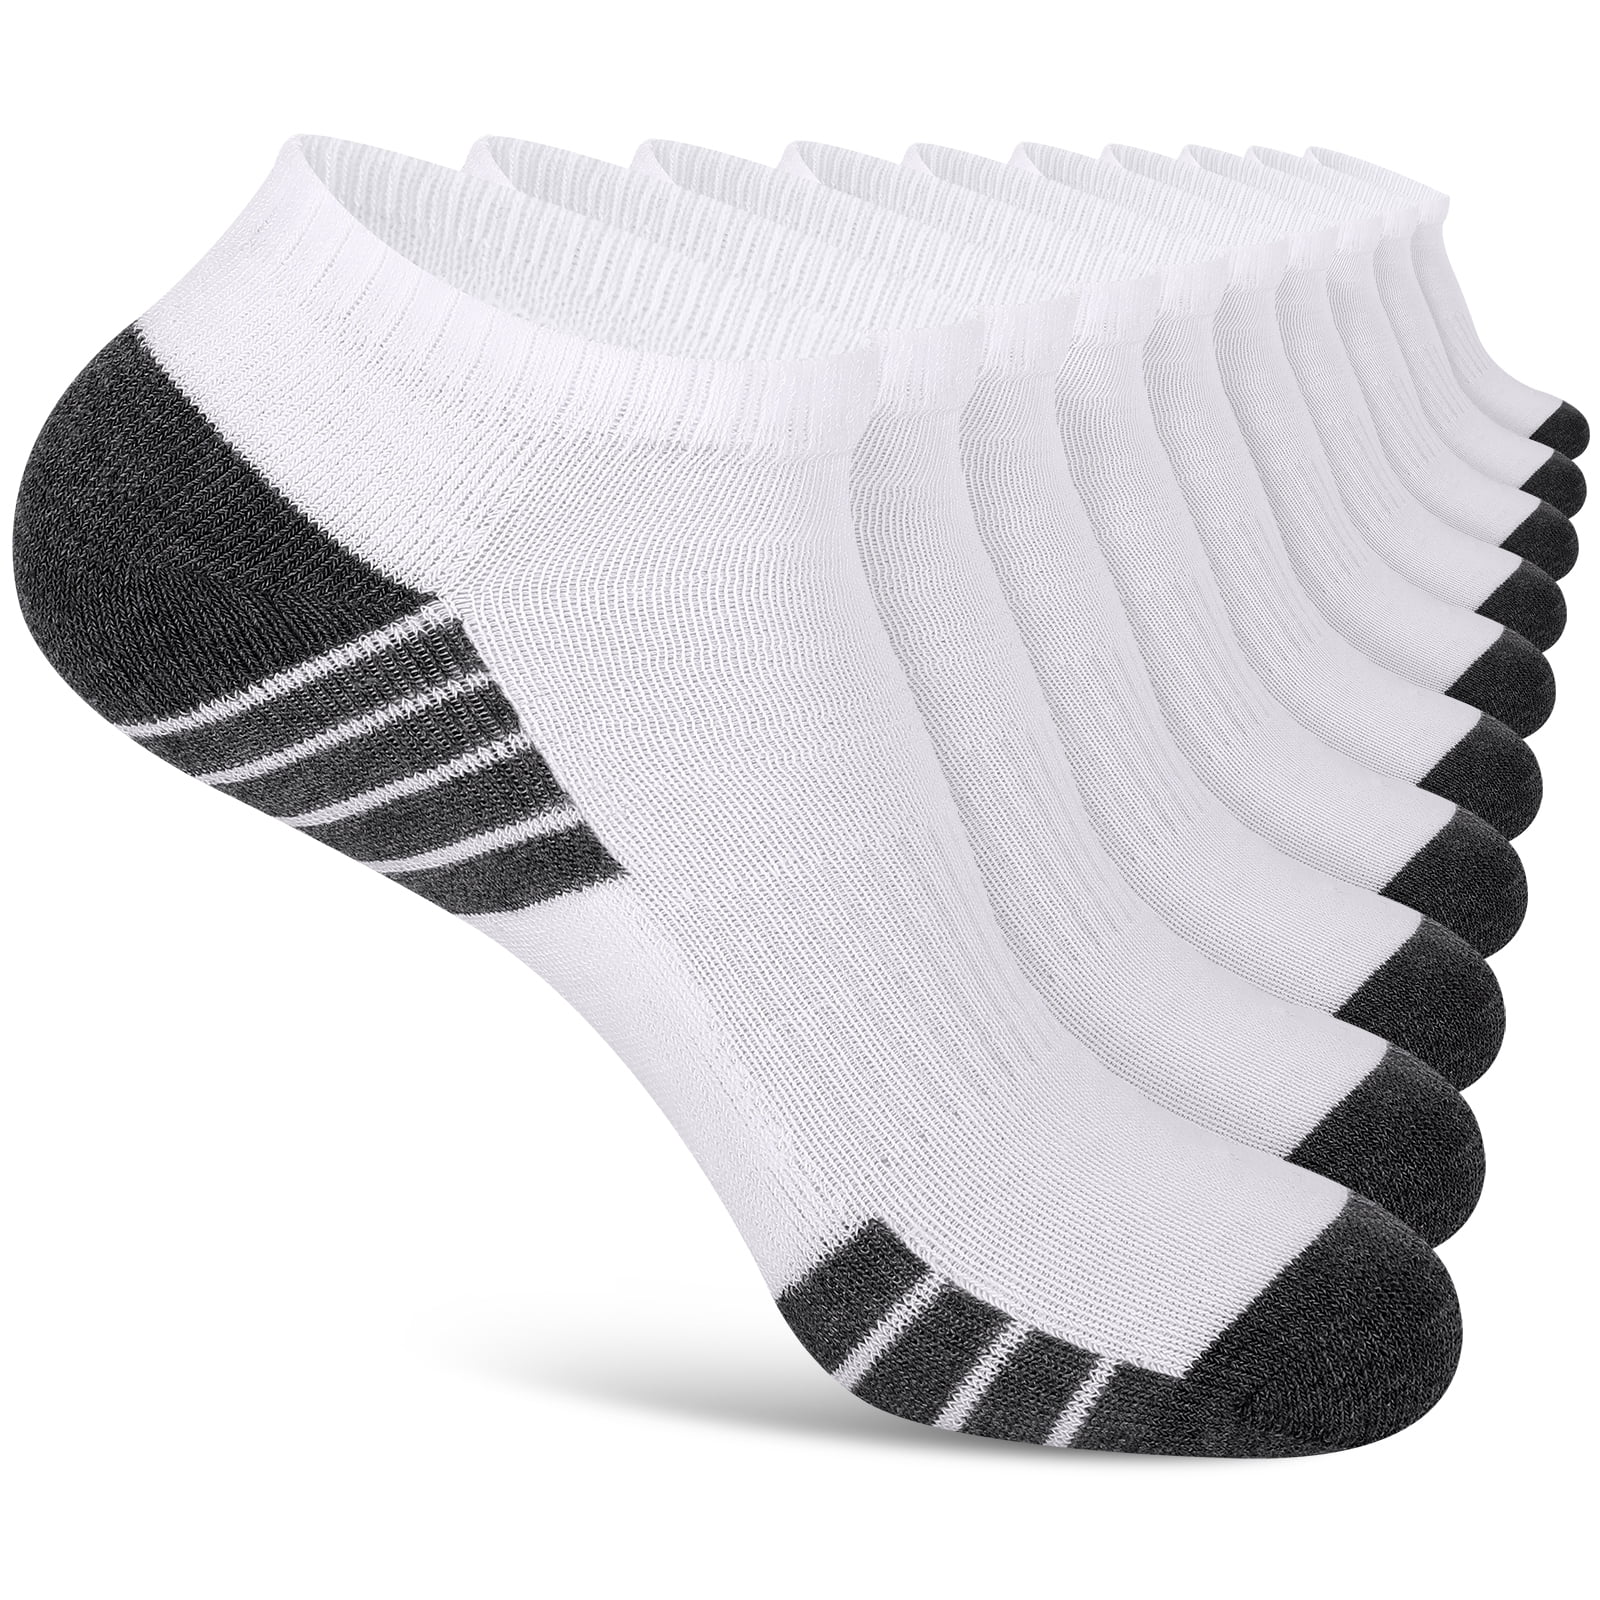 EALLCO 10 Pack Men's Ankle Socks Breathable Low Cut Light Weight Socks ...